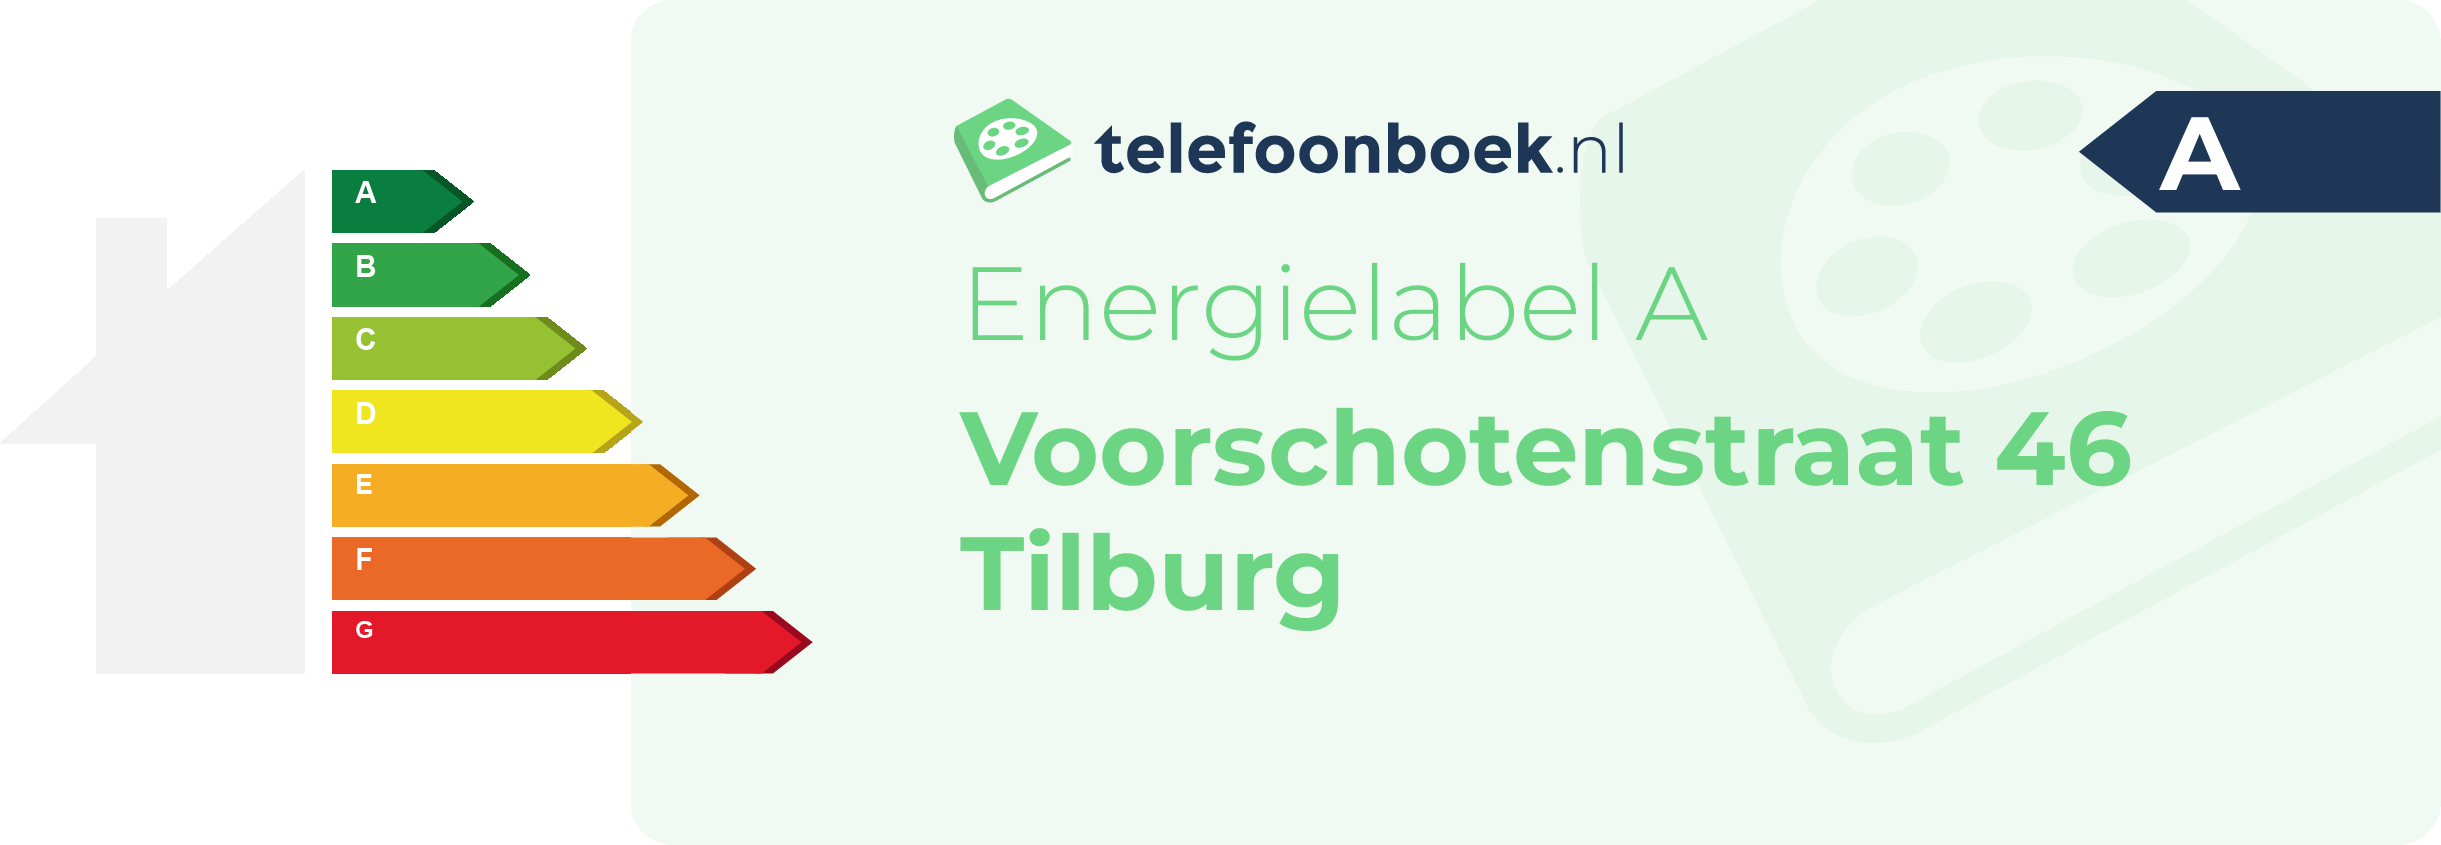 Energielabel Voorschotenstraat 46 Tilburg